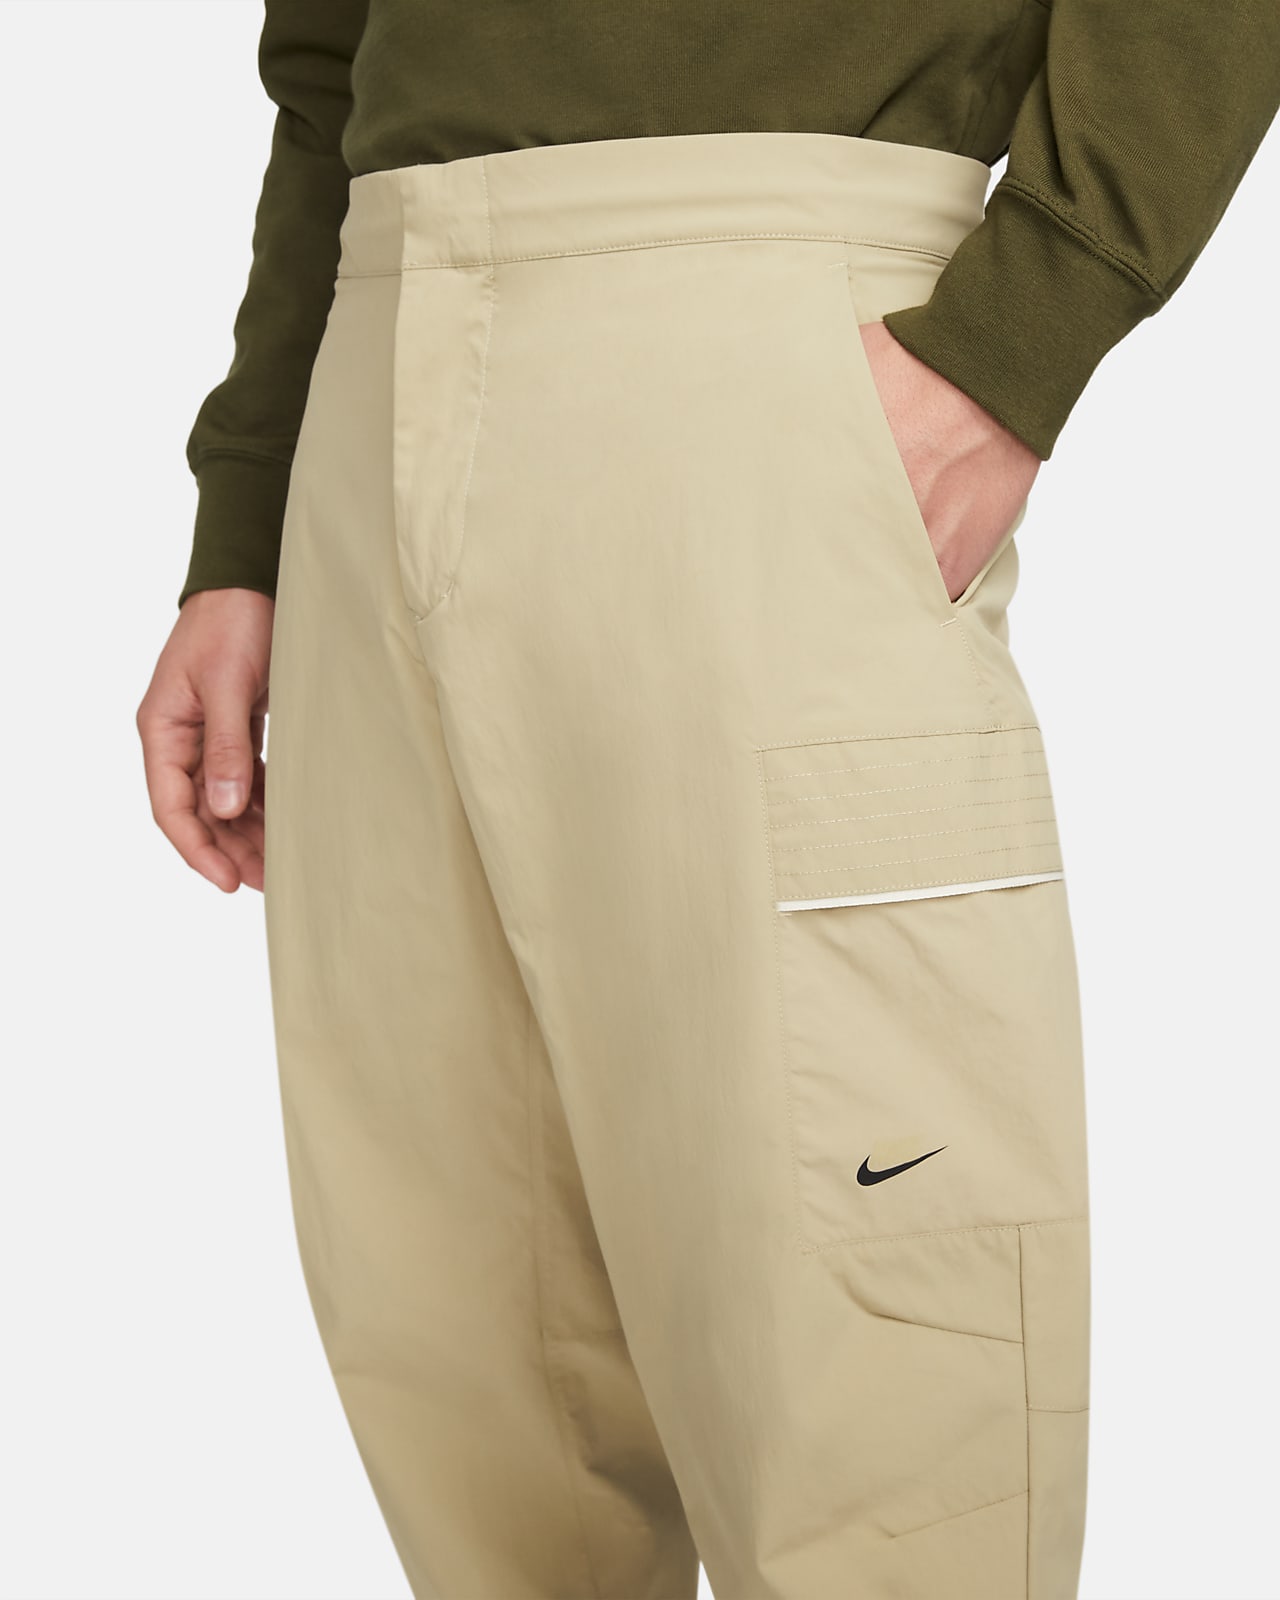 Nike Sportswear Utility Men\'s Pants. Essentials Style